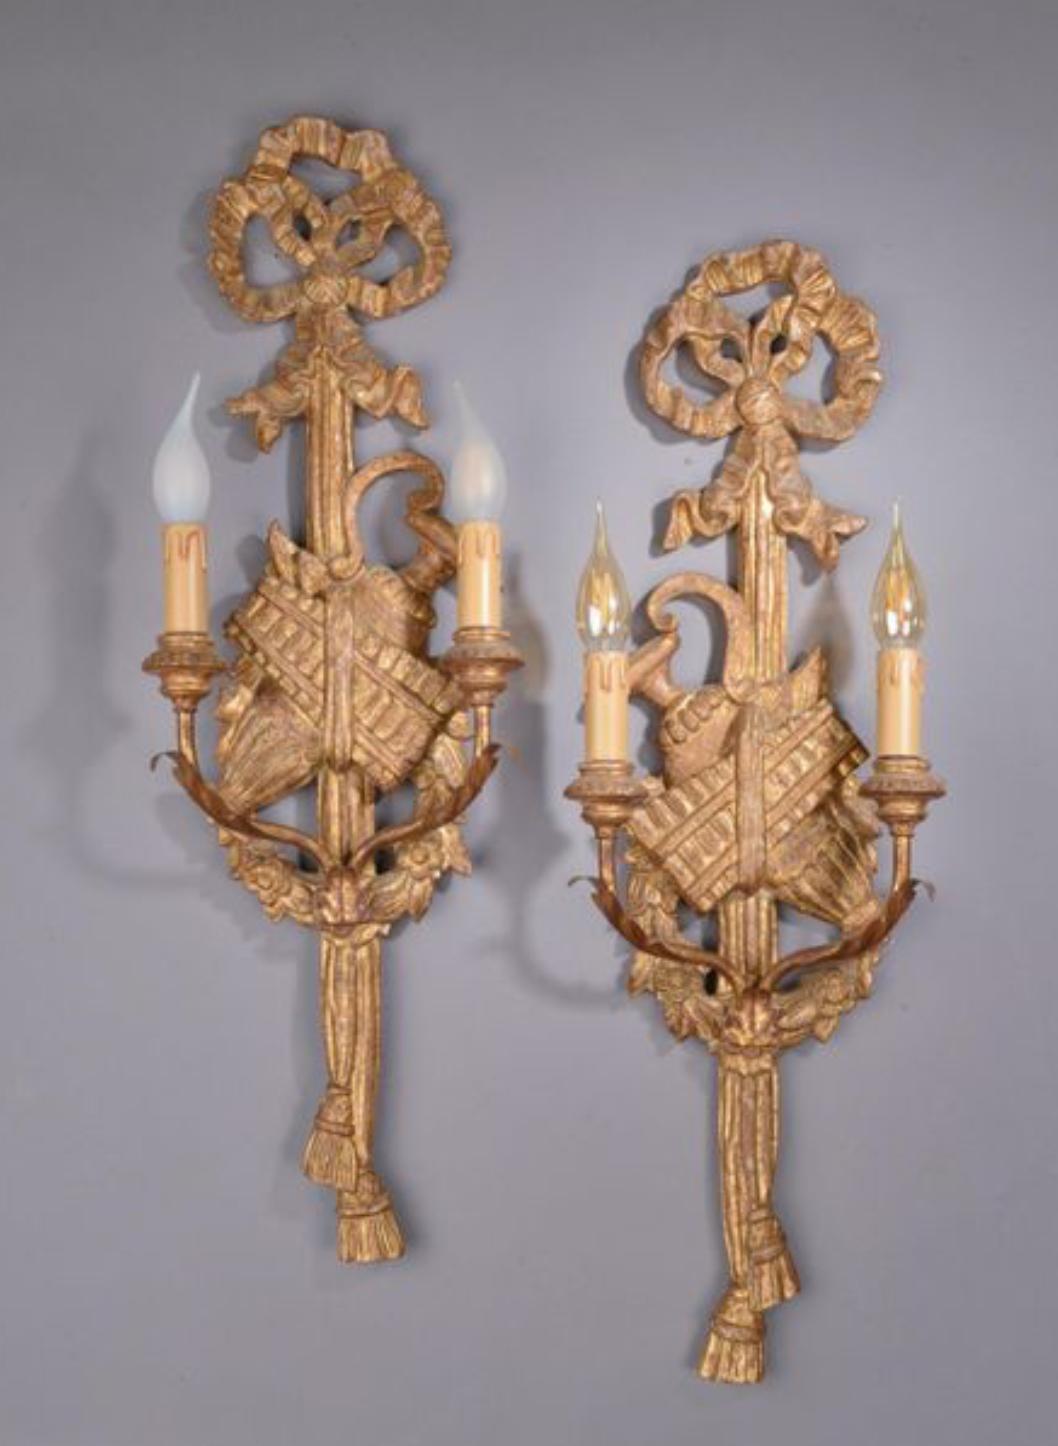 Ces appliques françaises anciennes de style Louis XVI, sculptées à la main et en bois doré, sont réglées et câblées pour deux ampoules chacune.
France, vers 1880.